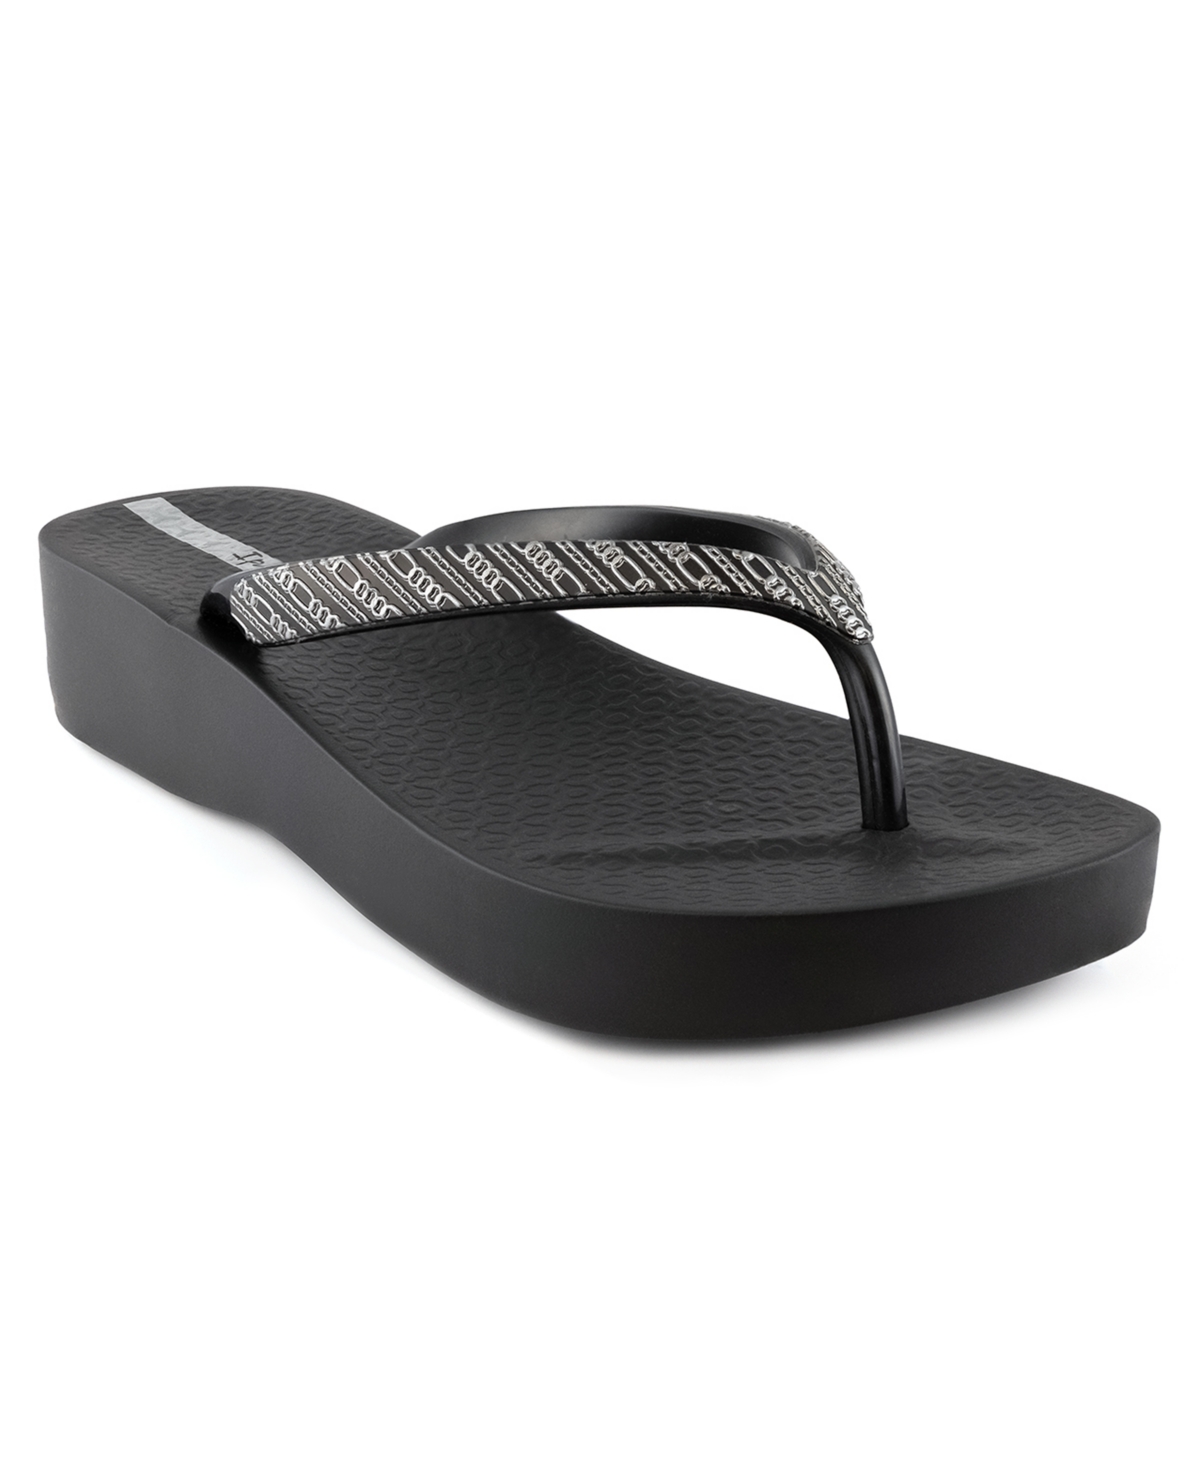 Ipanema Women's Mesh Viii Comfort Platform Sandals Women's Shoes In Black/gray